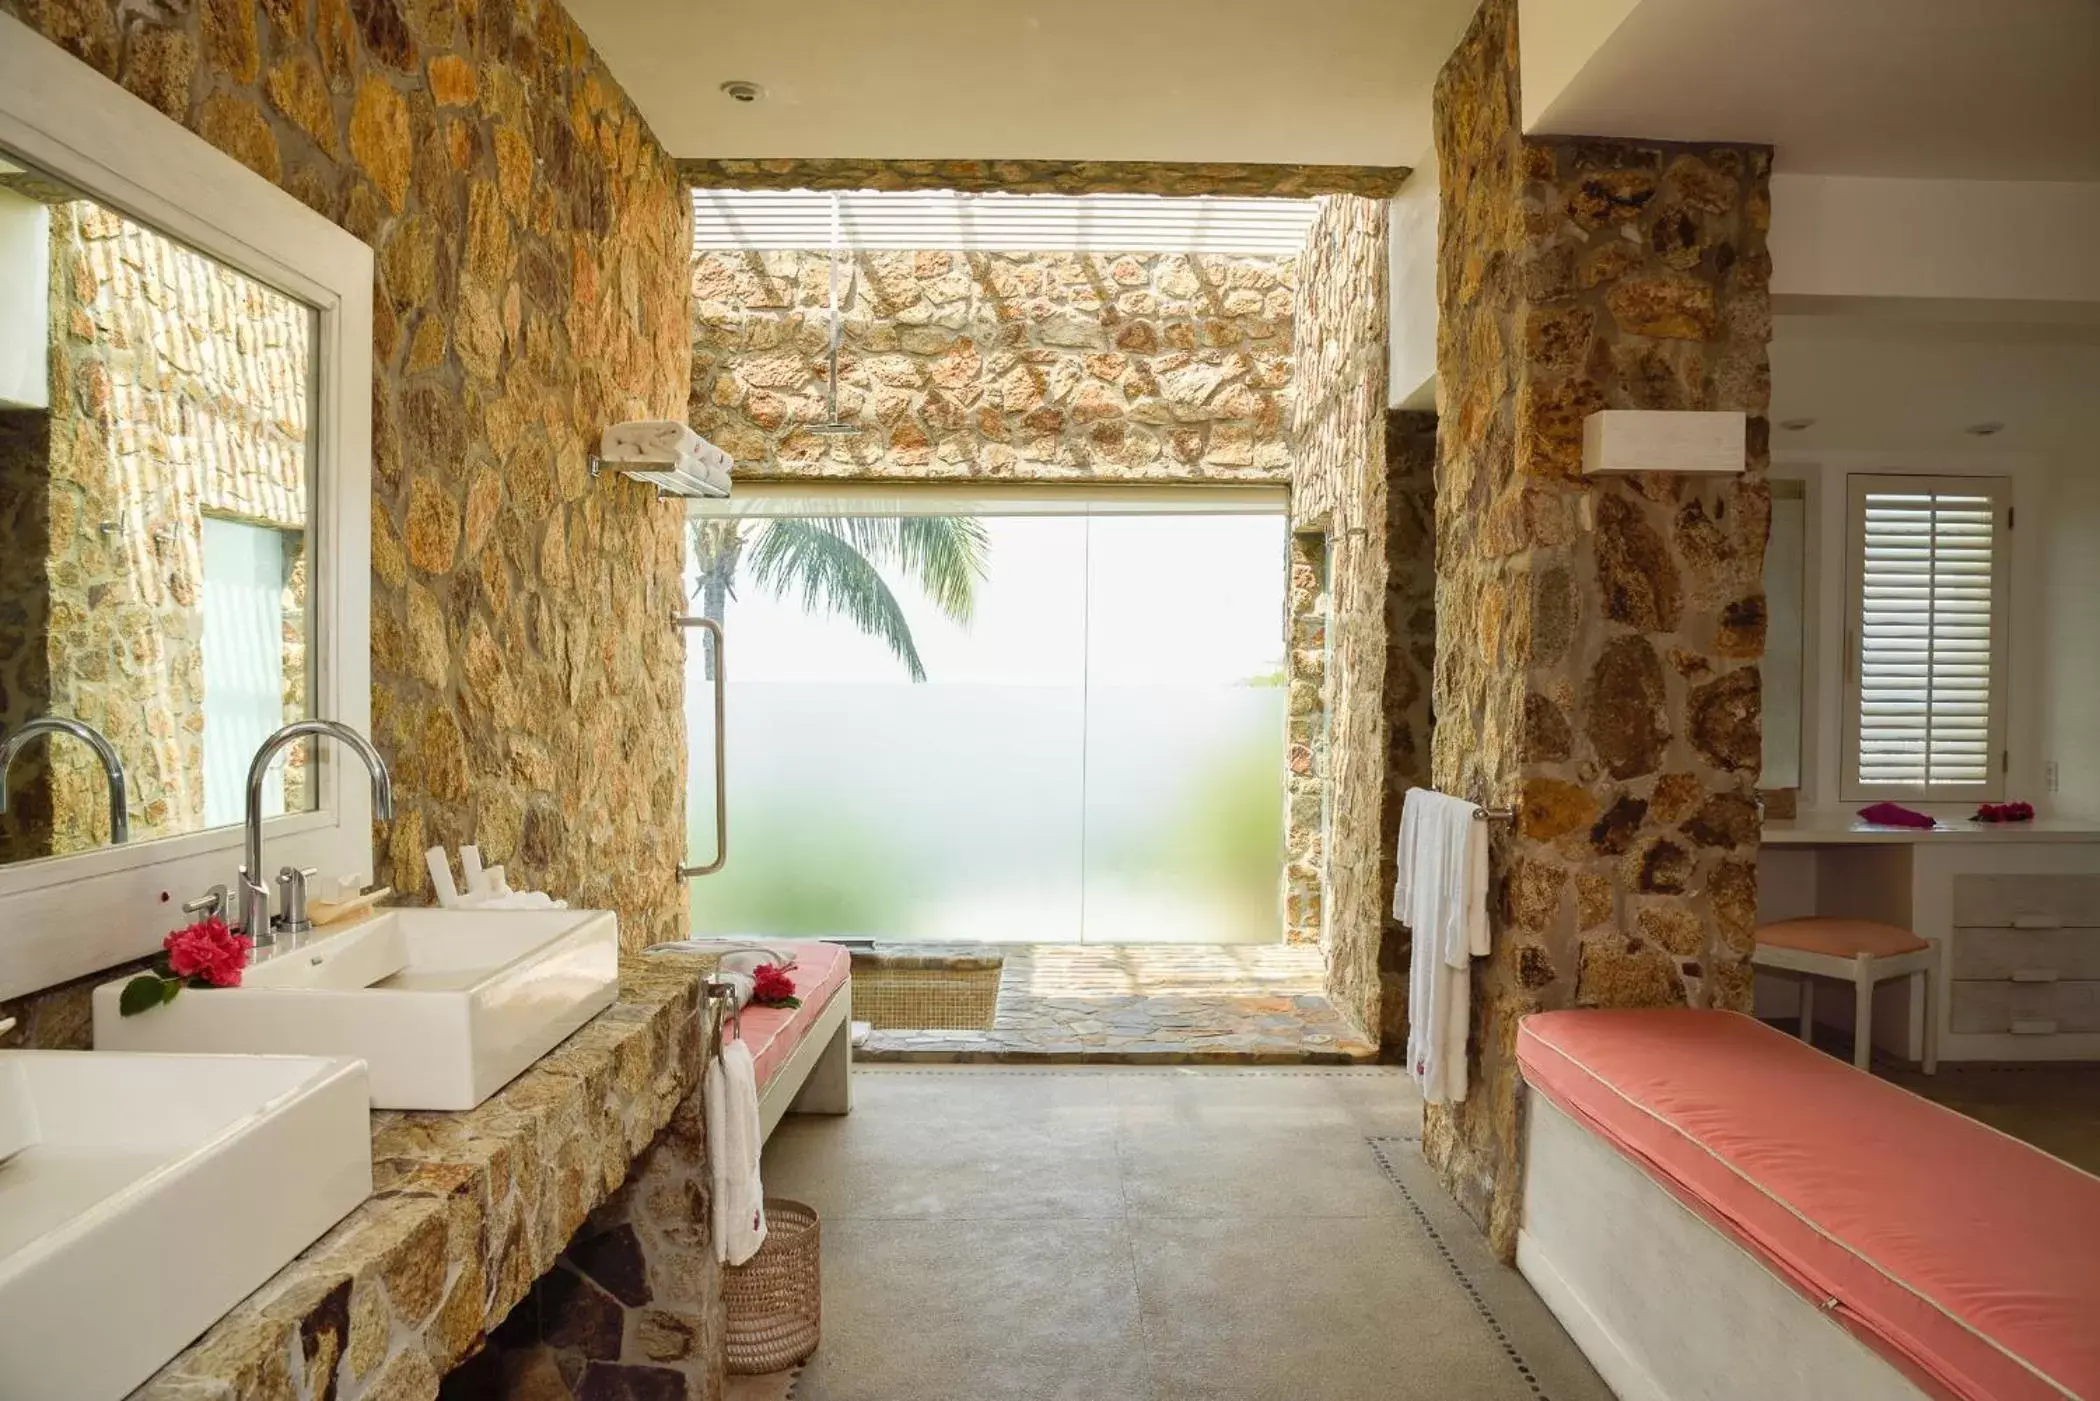 Shower, Bathroom in Las Brisas Acapulco